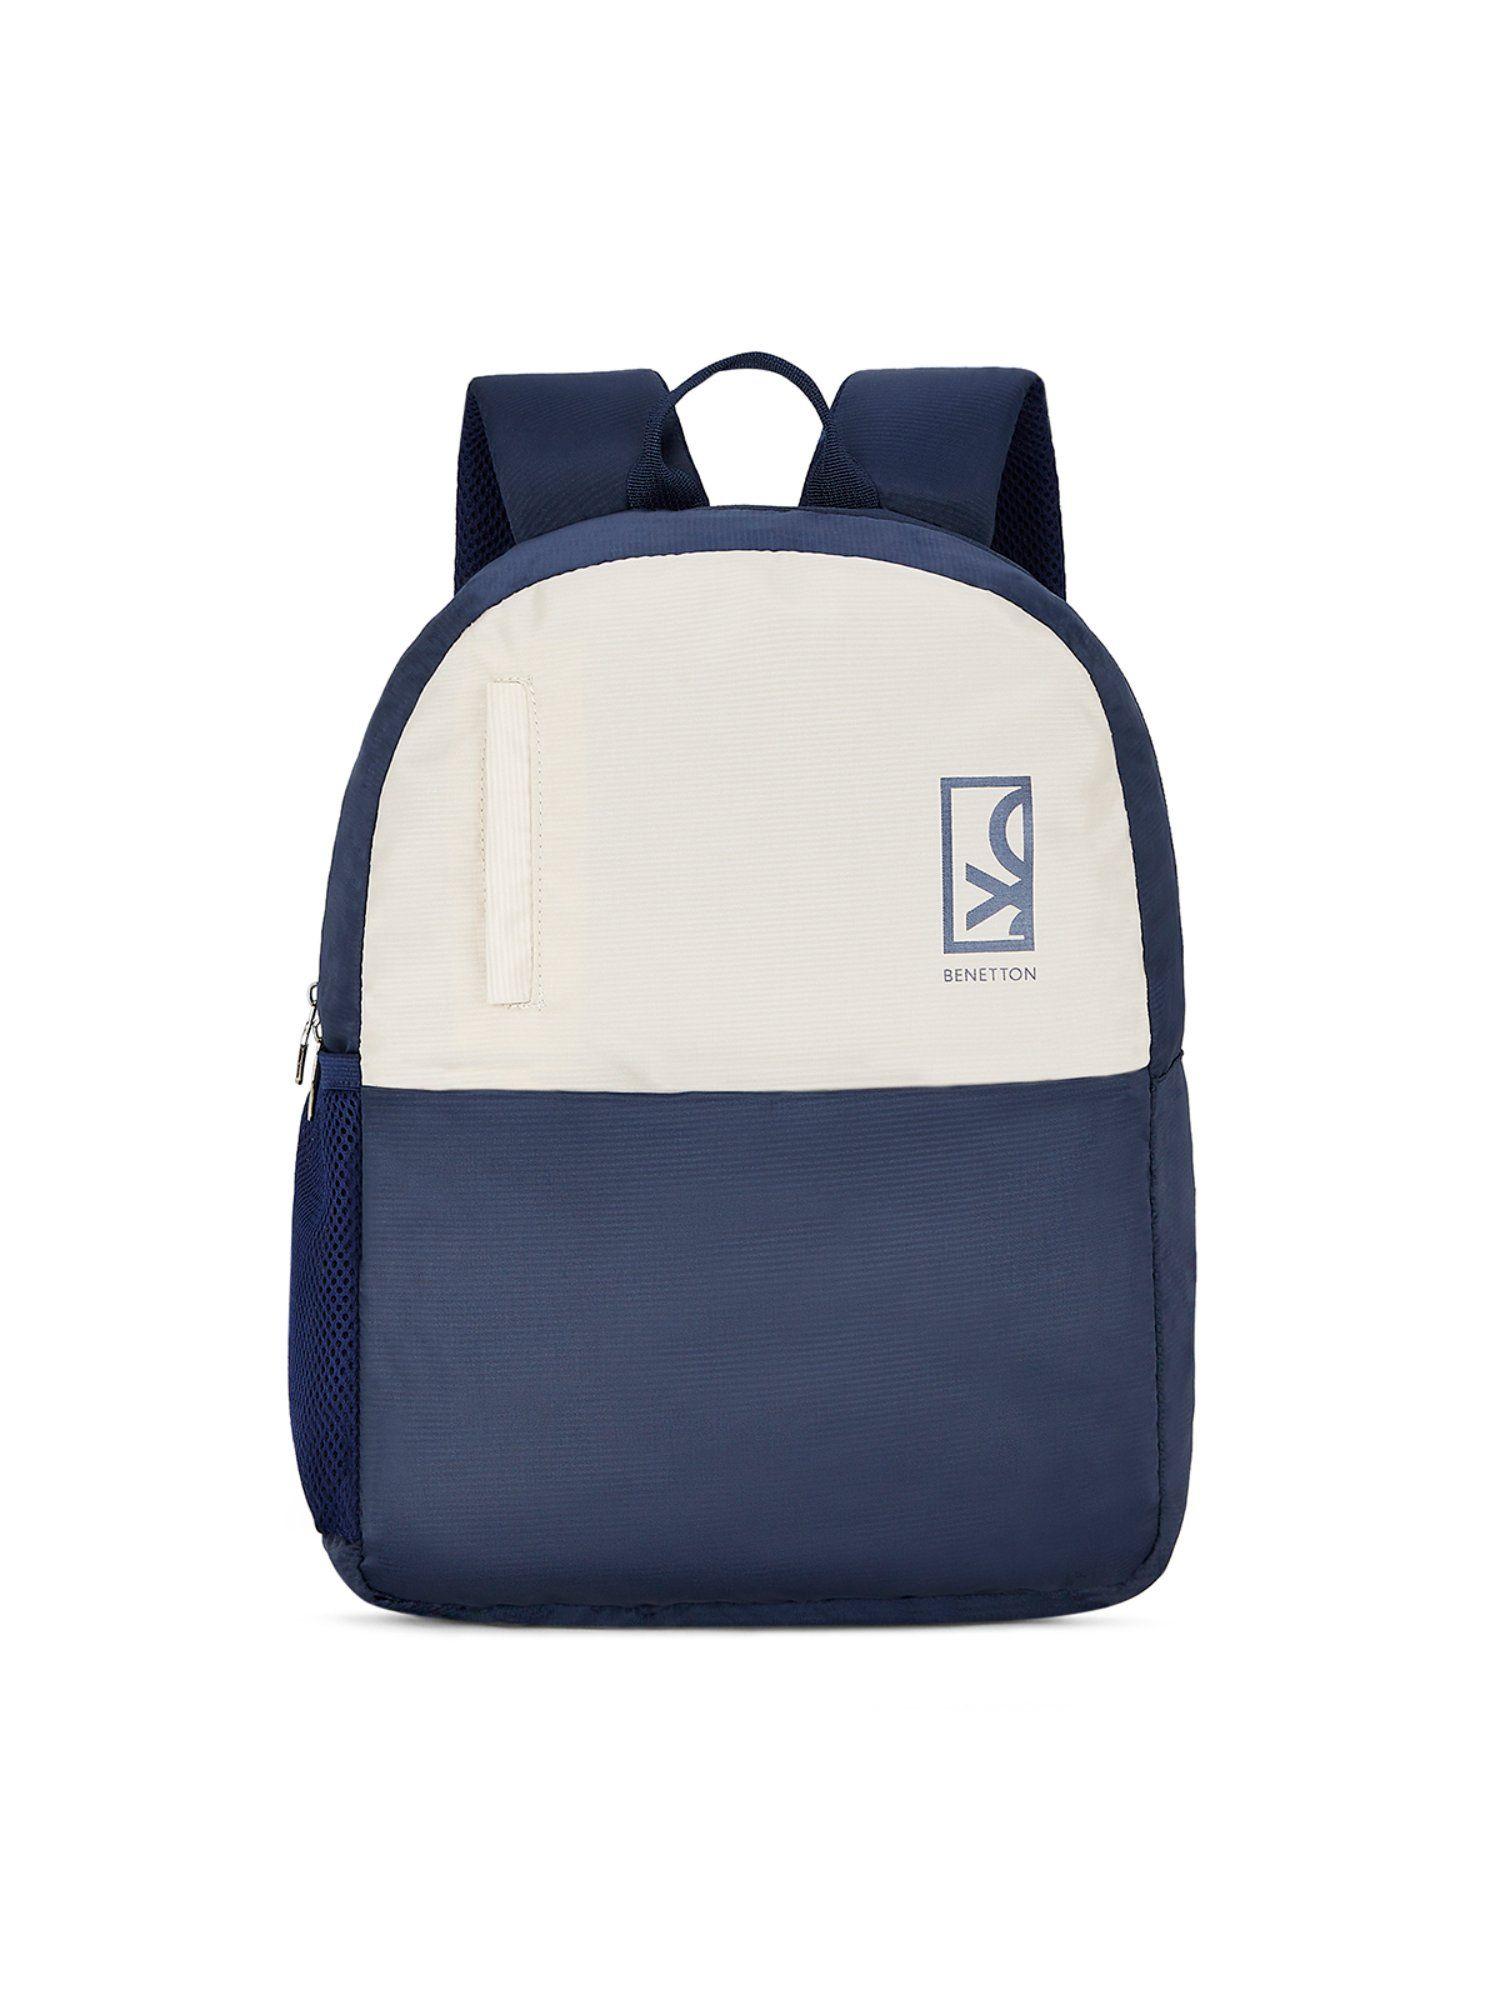 hemlock unisex polyester backpack - navy (m)